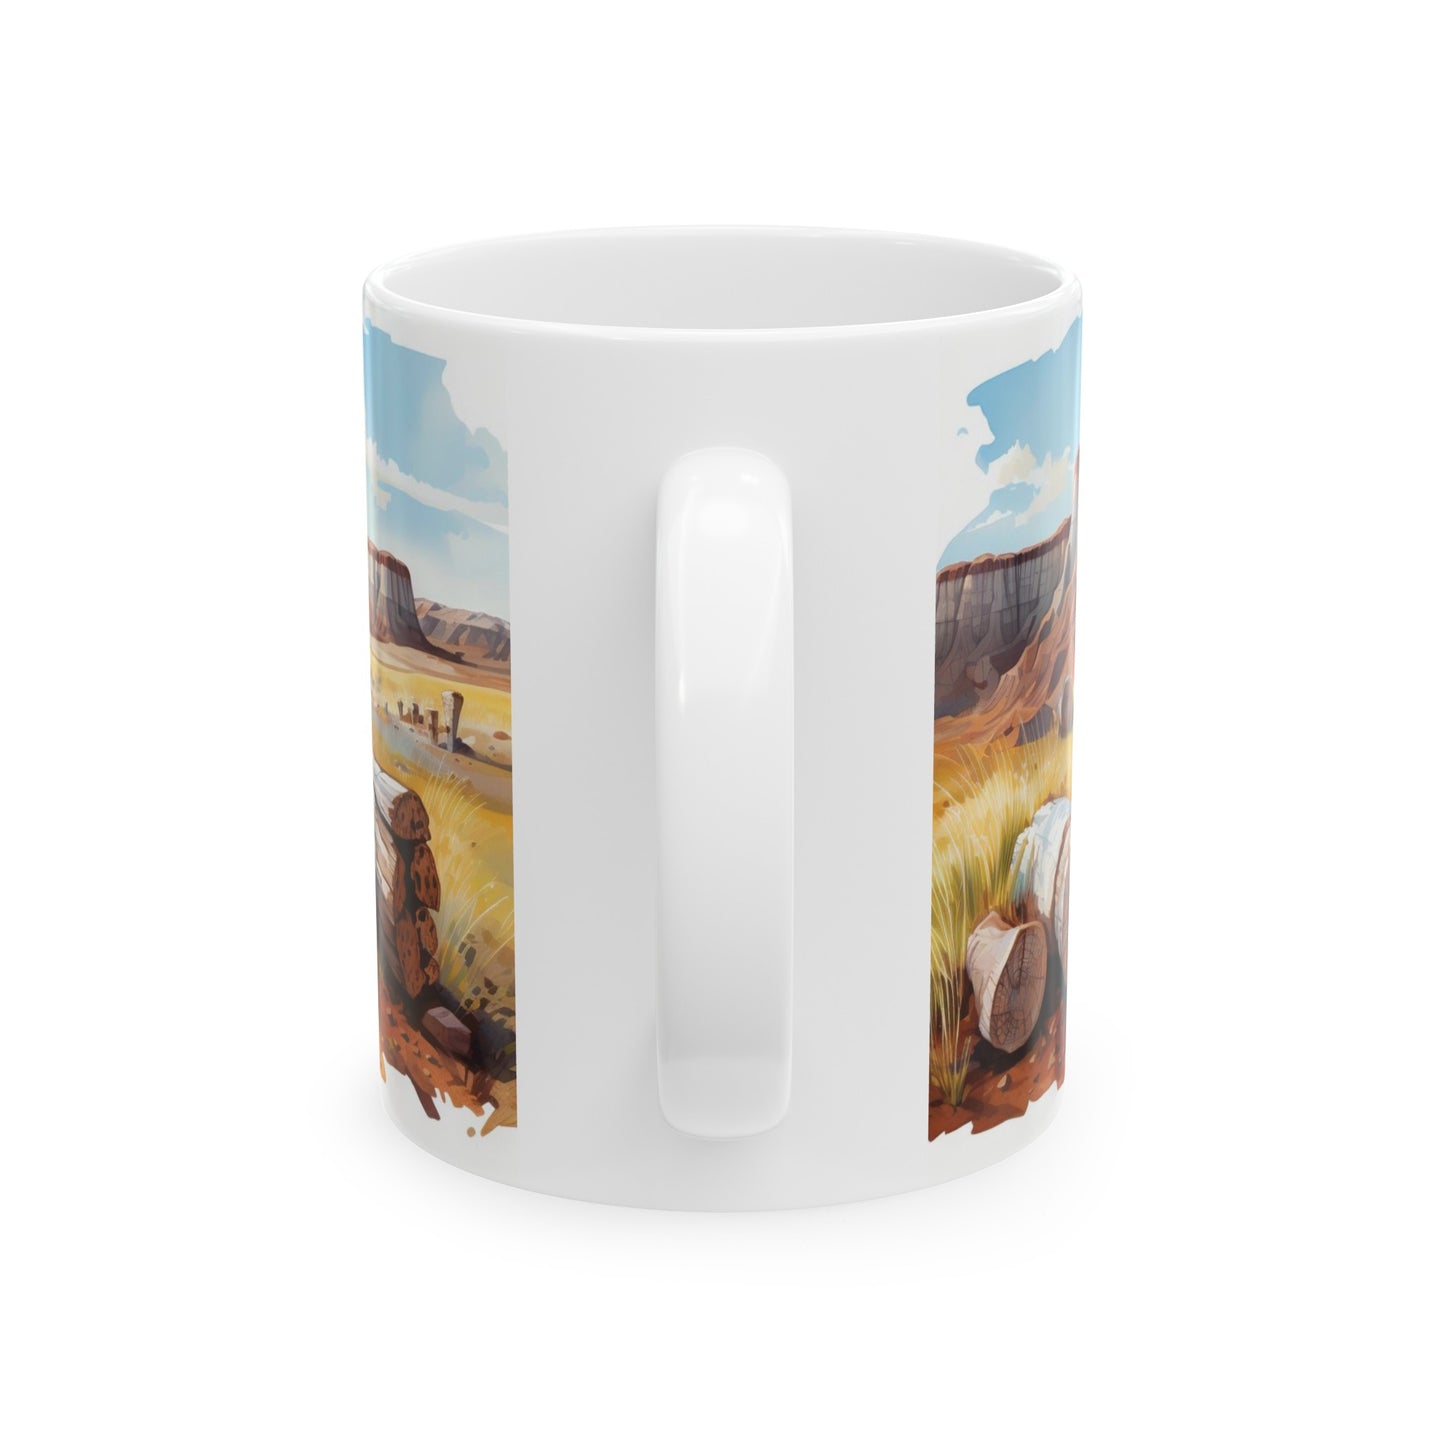 Petrified Forest National Park Mug | White Ceramic Mug (11oz, 15oz)